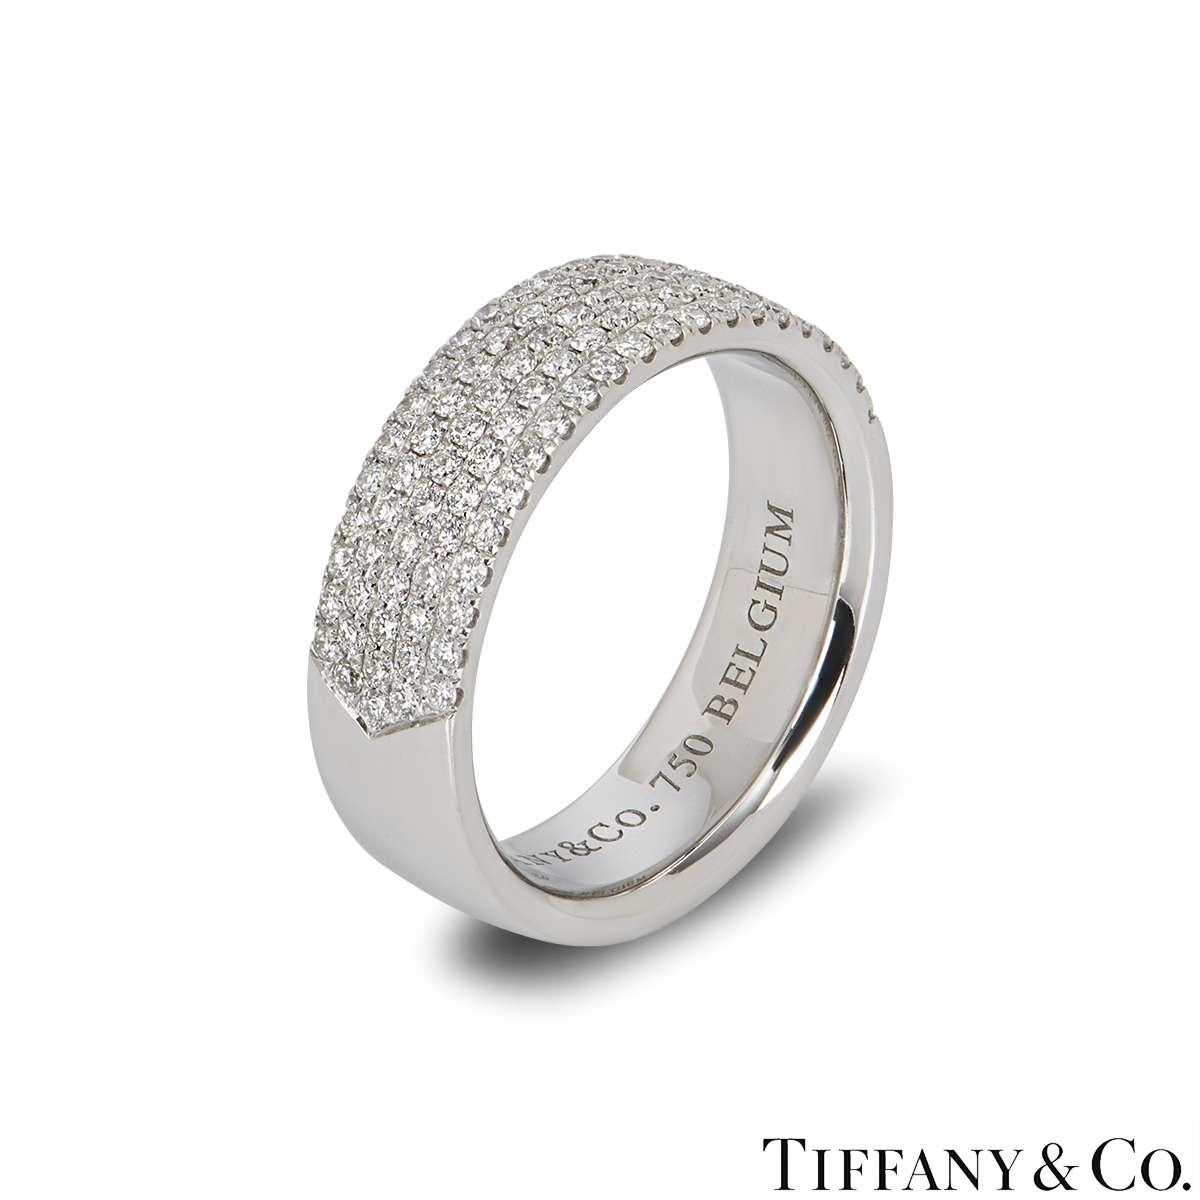 Une belle bague à diamants en or blanc 18k de Tiffany & Co. La bague comprend 5 rangées de diamants ronds de taille brillant à mi-chemin de l'anneau, d'un poids total de 0,76ct, de couleur G et de clarté VS. L'anneau est un anneau de 6 mm de type